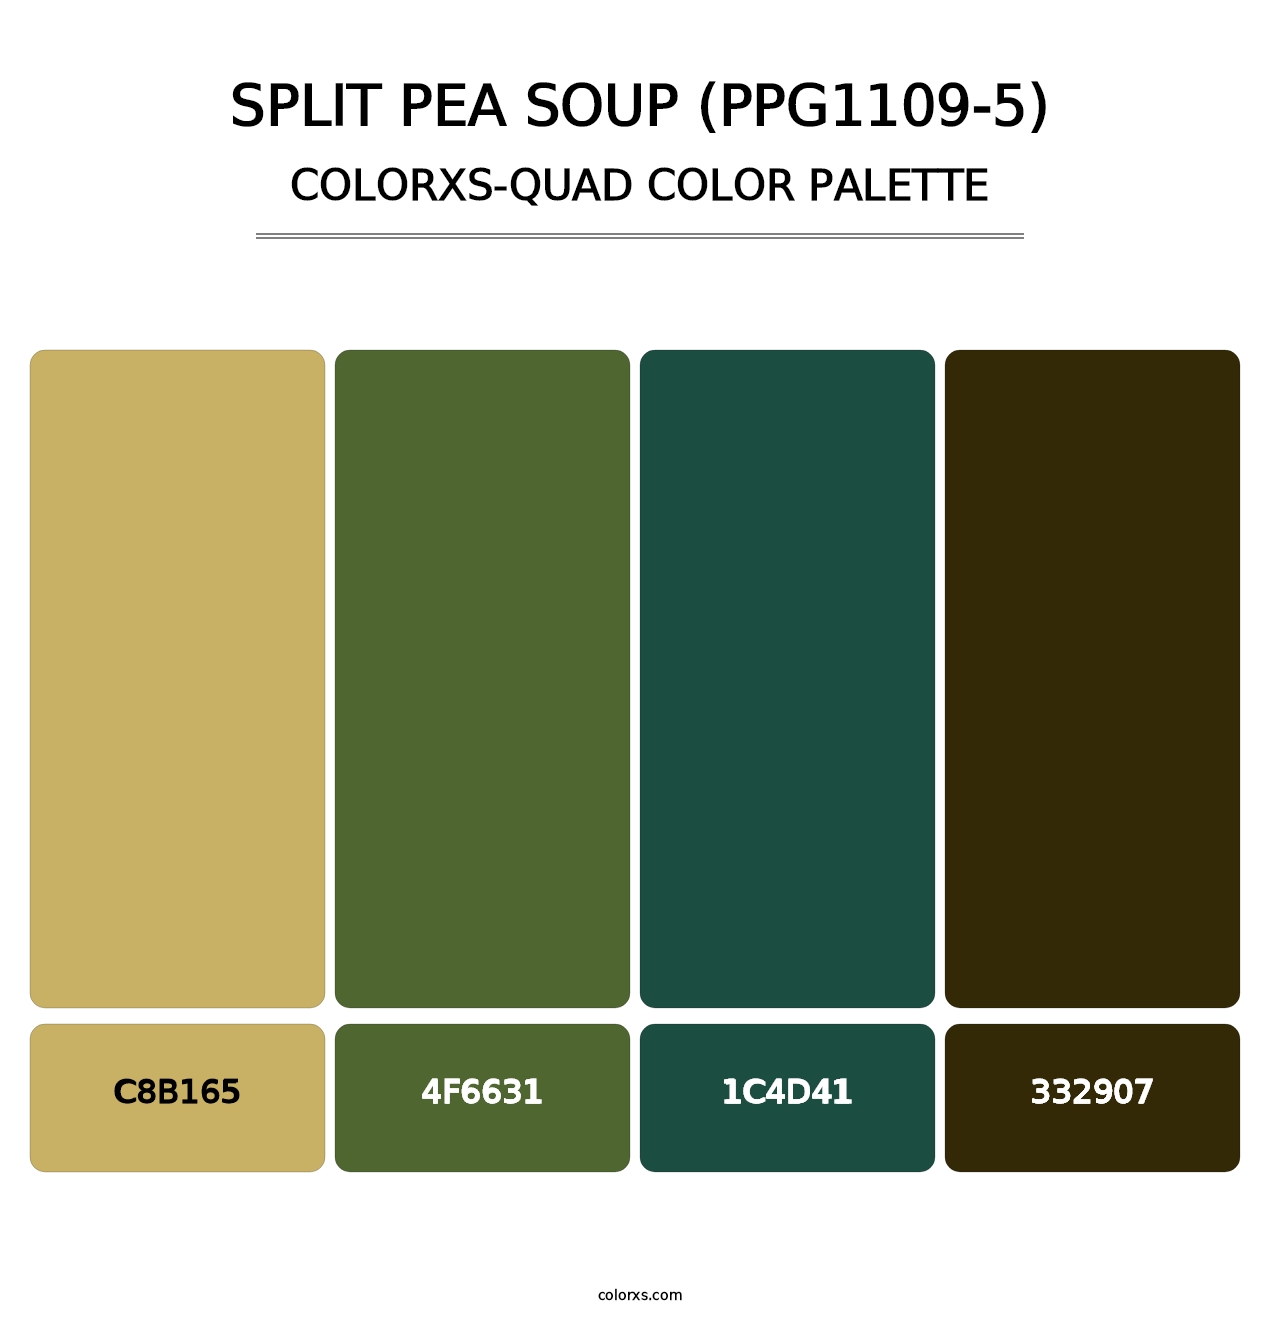 Split Pea Soup (PPG1109-5) - Colorxs Quad Palette